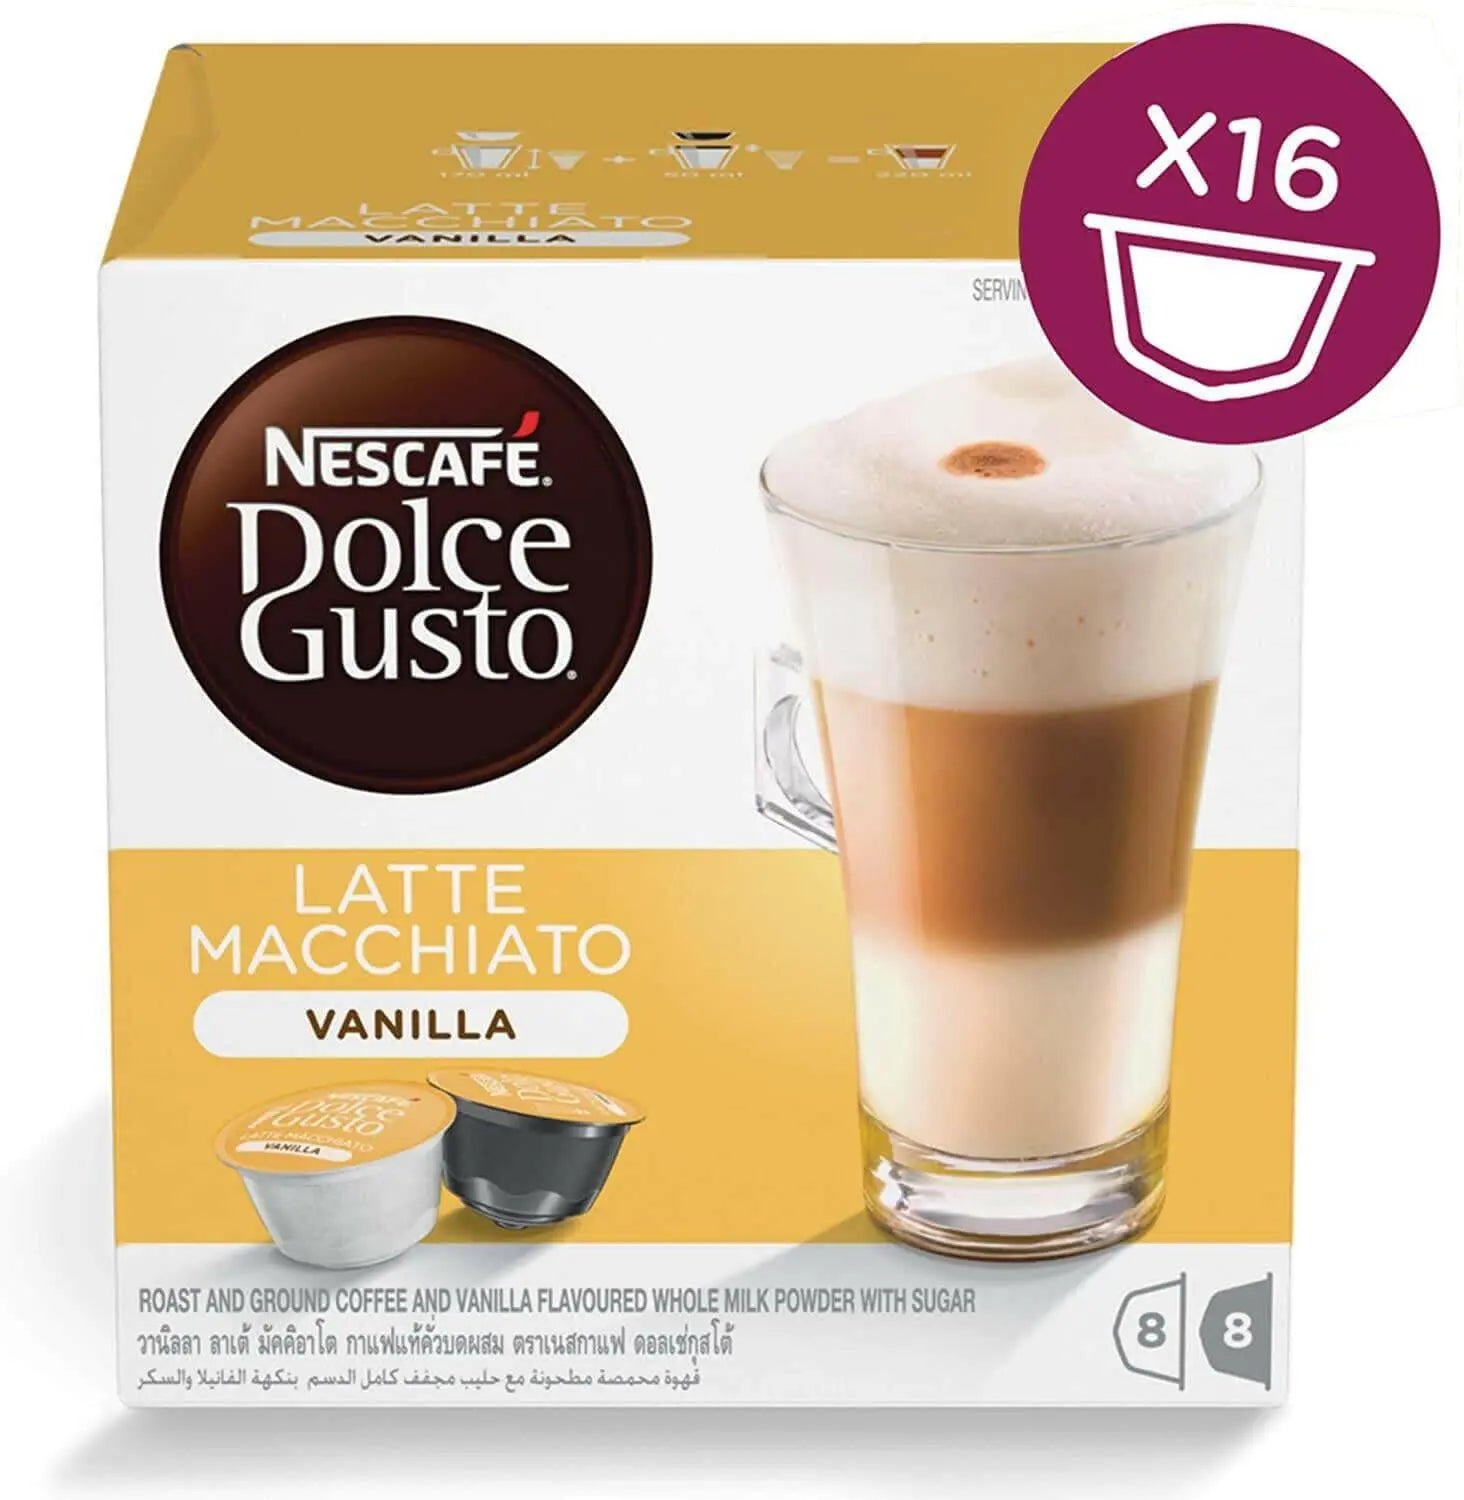 Nescafe Dolce Gusto Latte Macchiato Vanilla - 16 Capsules